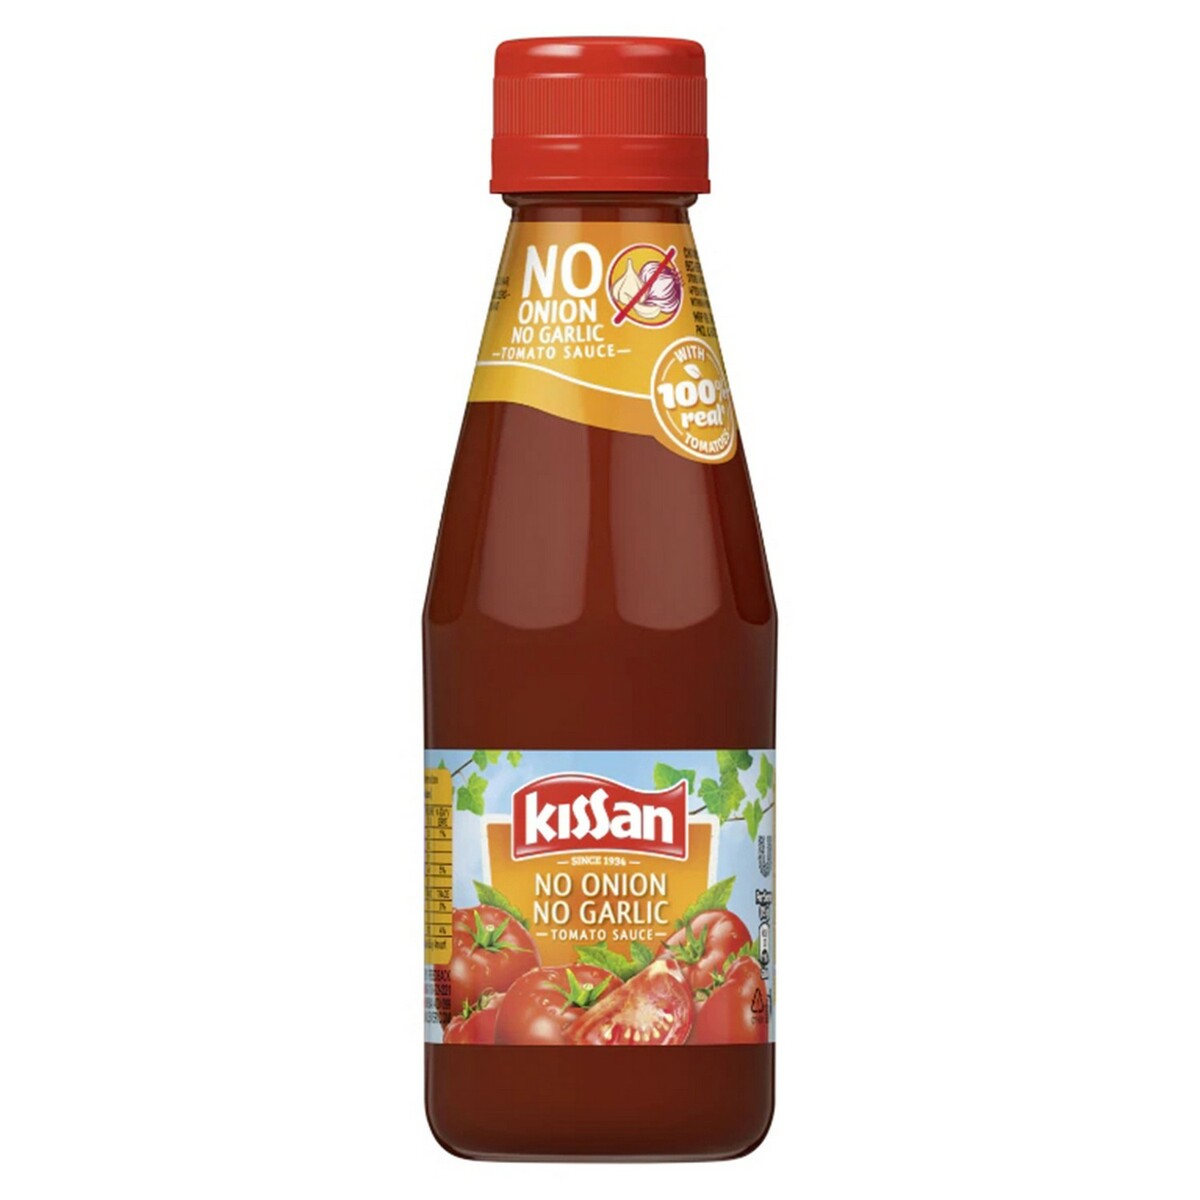 Kissan No Garlic No Onion Tomato Sauce 200g